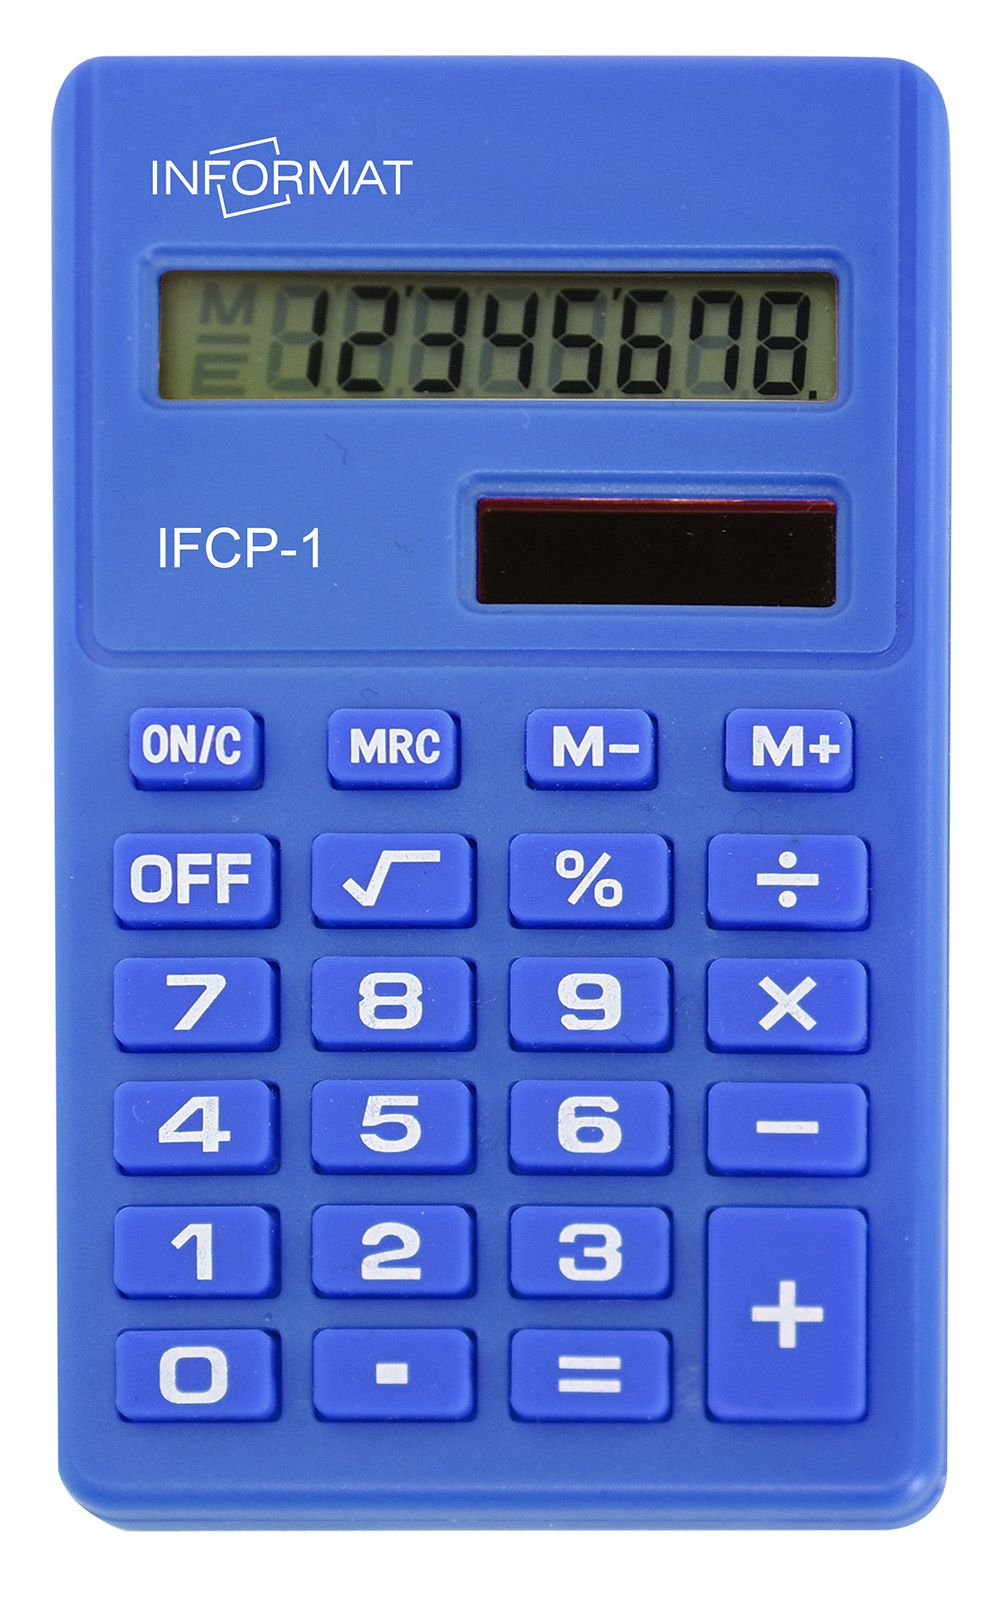  INFORMAT IFCP-1 8 , ,  